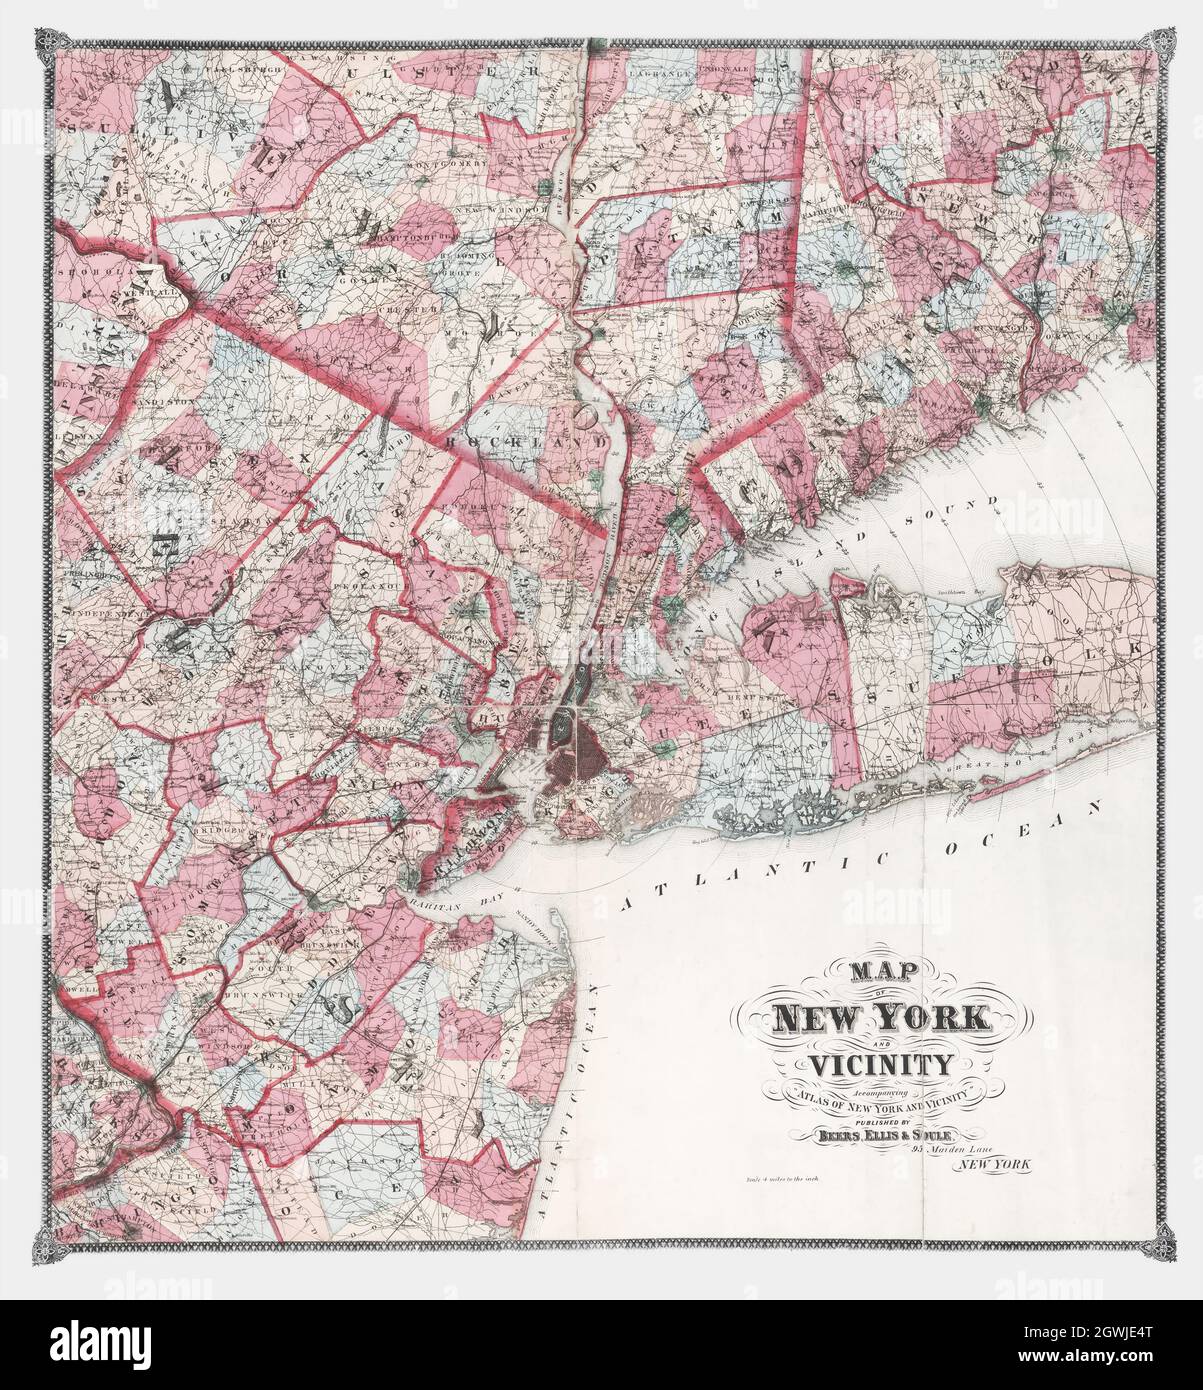 Karte von New York und Umgebung mit dem „Atlas of New York and Vicinity“, herausgegeben von Beers, Ellis & Soule, 95 Maiden Lane, New York. (1868) Stockfoto